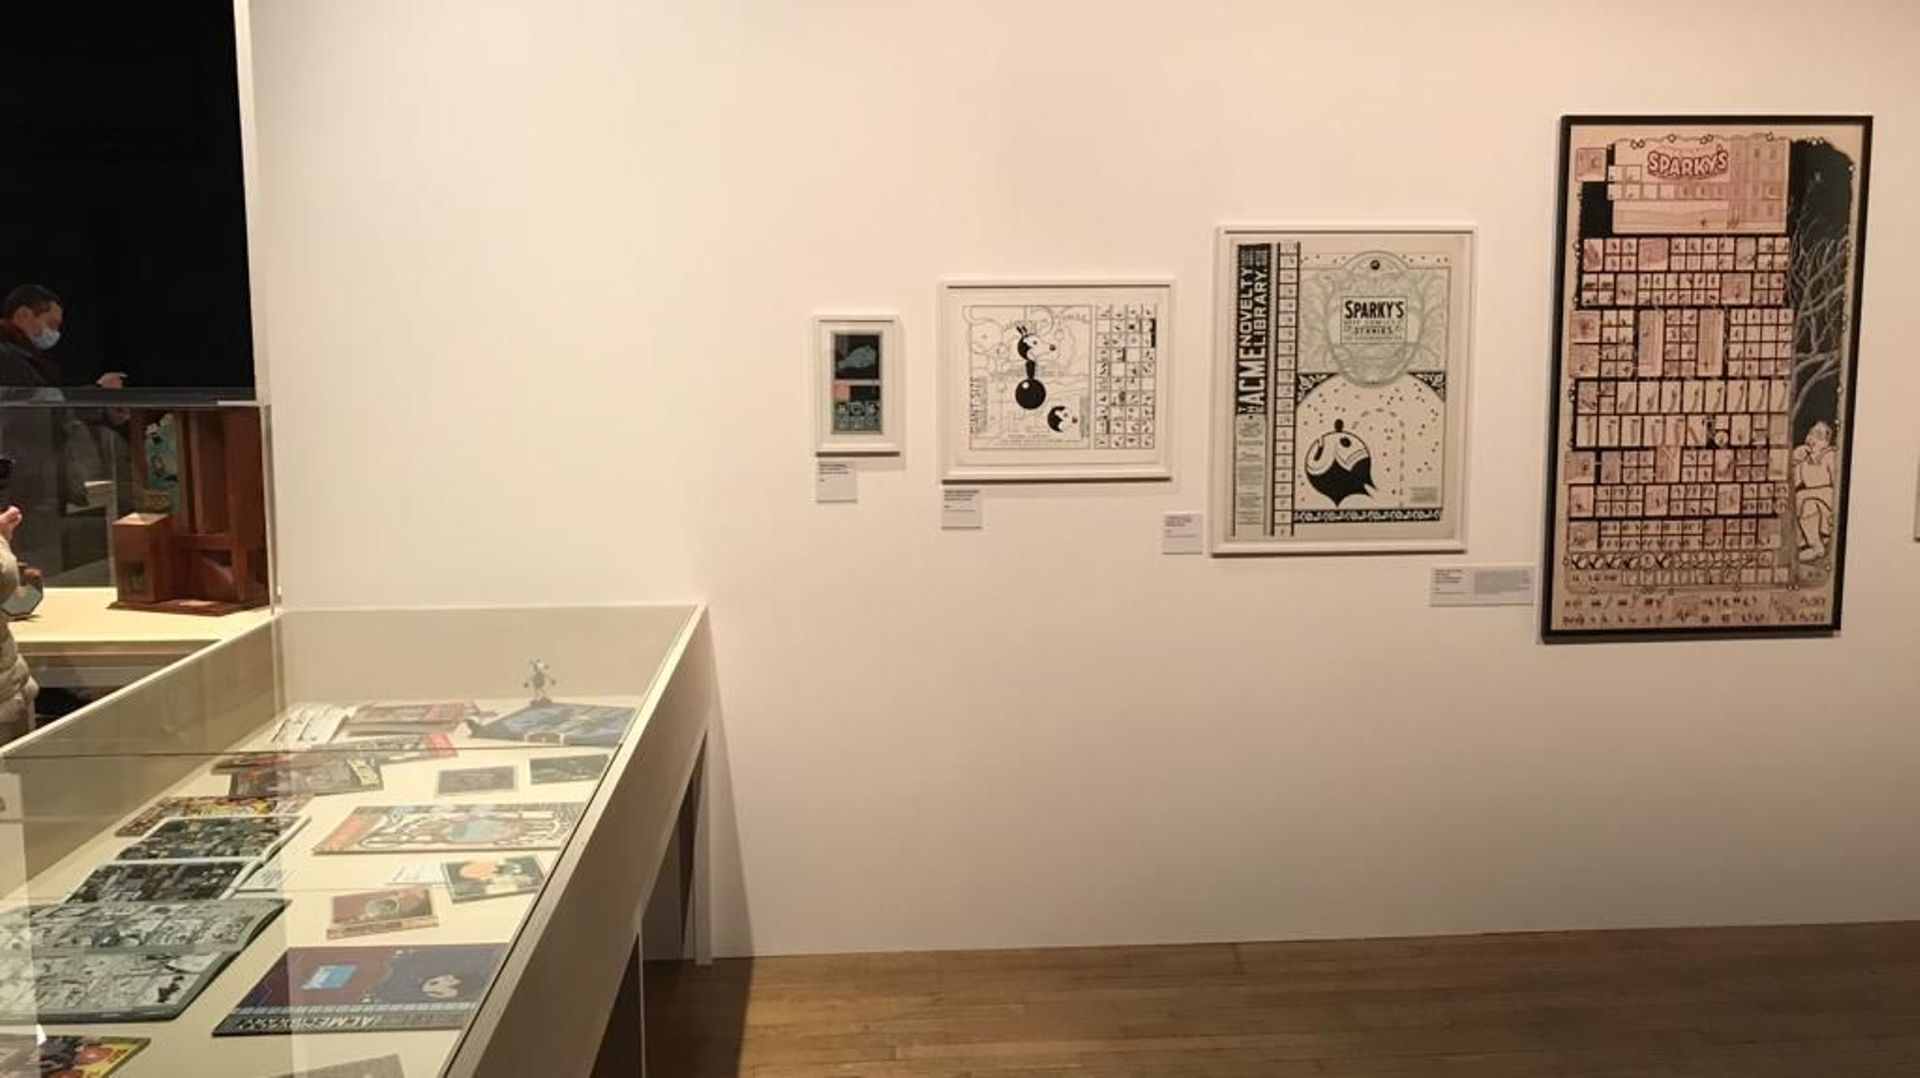 Des images de l'exposition Chris Ware au Festival international de la Bande dessinée d'Angoulême